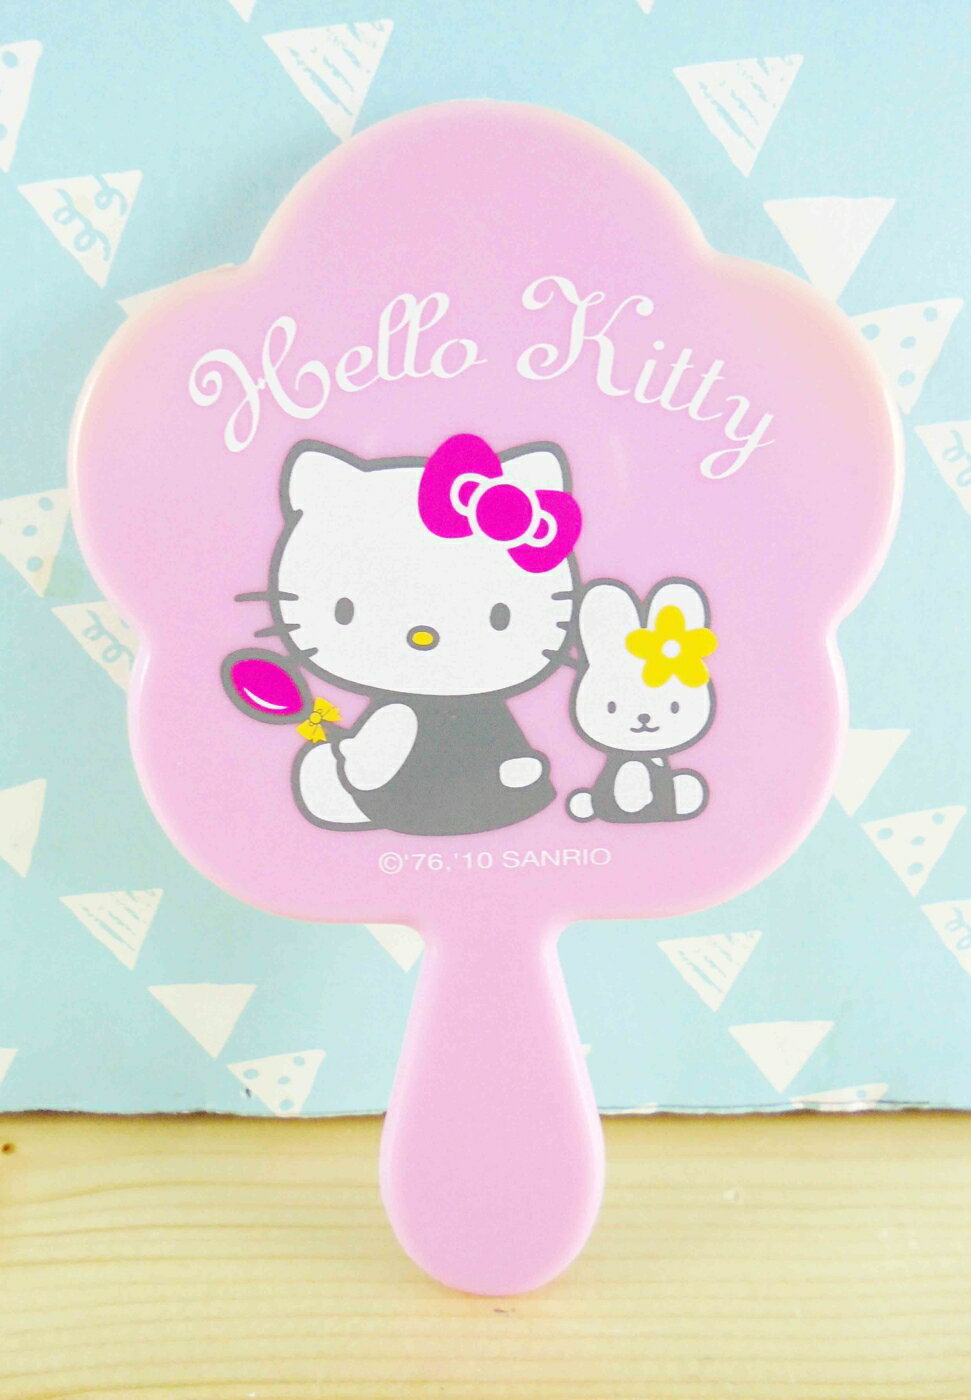 【震撼精品百貨】Hello Kitty 凱蒂貓-HELLO KITTY手拿鏡-小兔圖案 震撼日式精品百貨